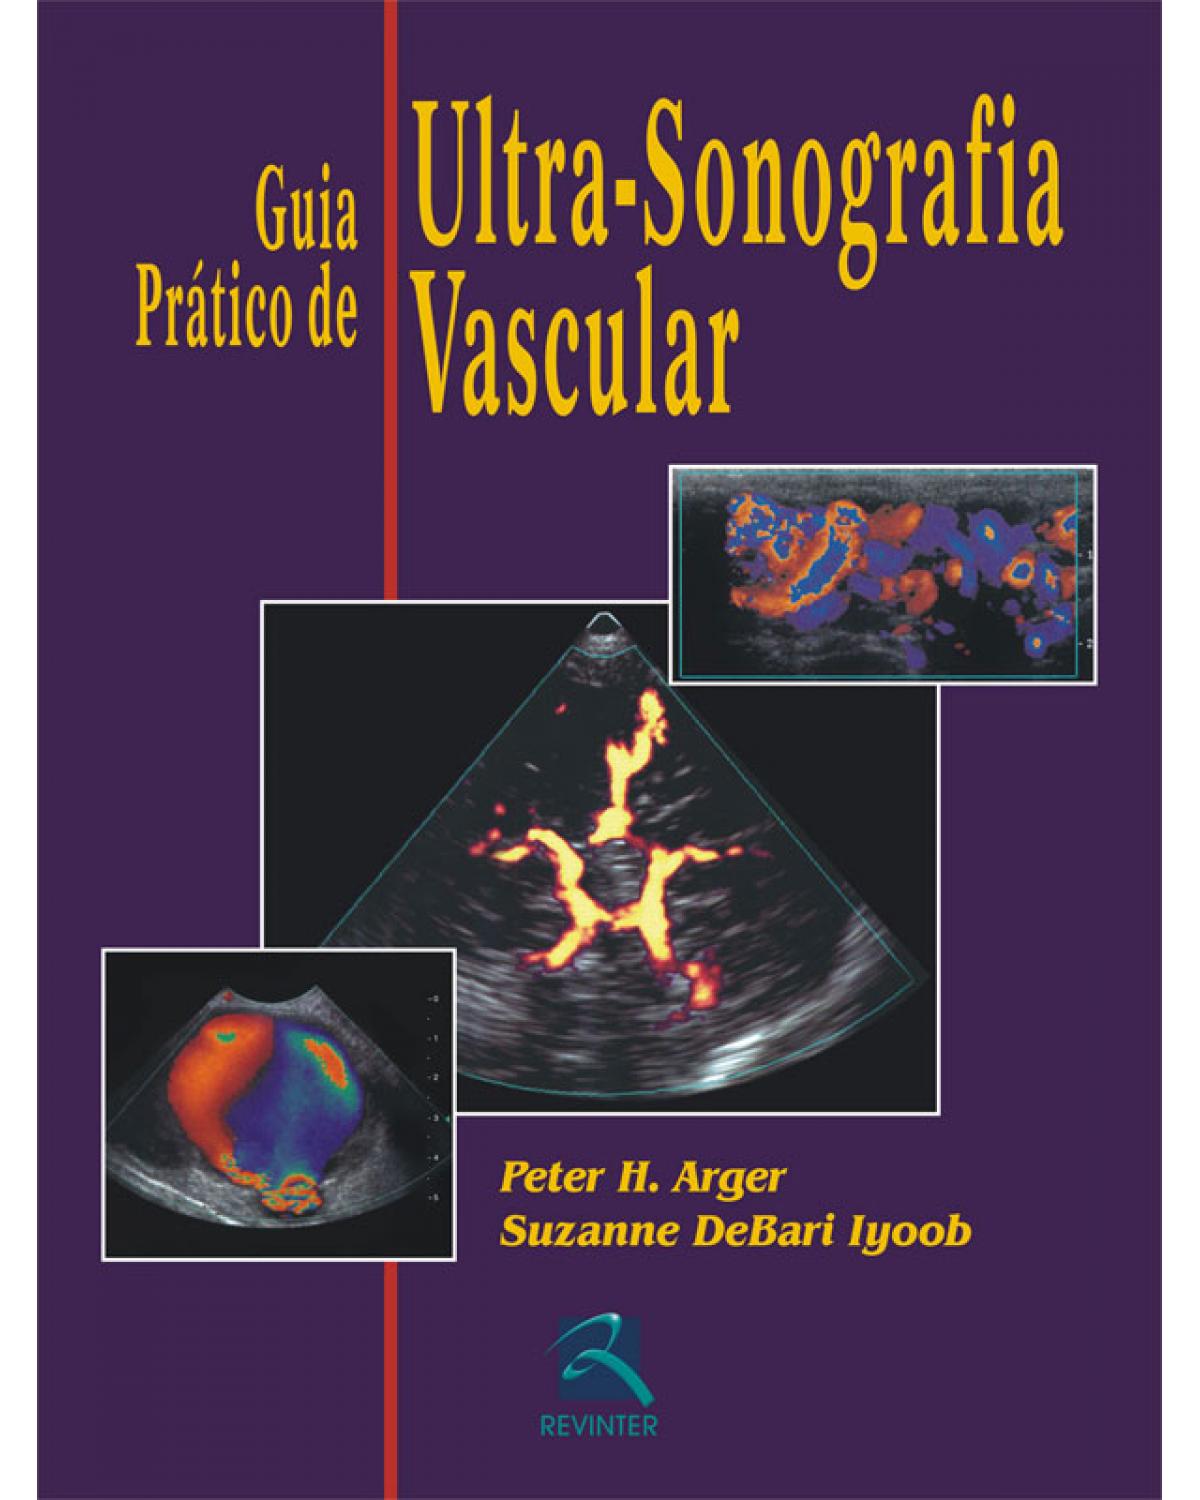 Guia prático de ultra-sonografia vascular - 1ª Edição | 2007